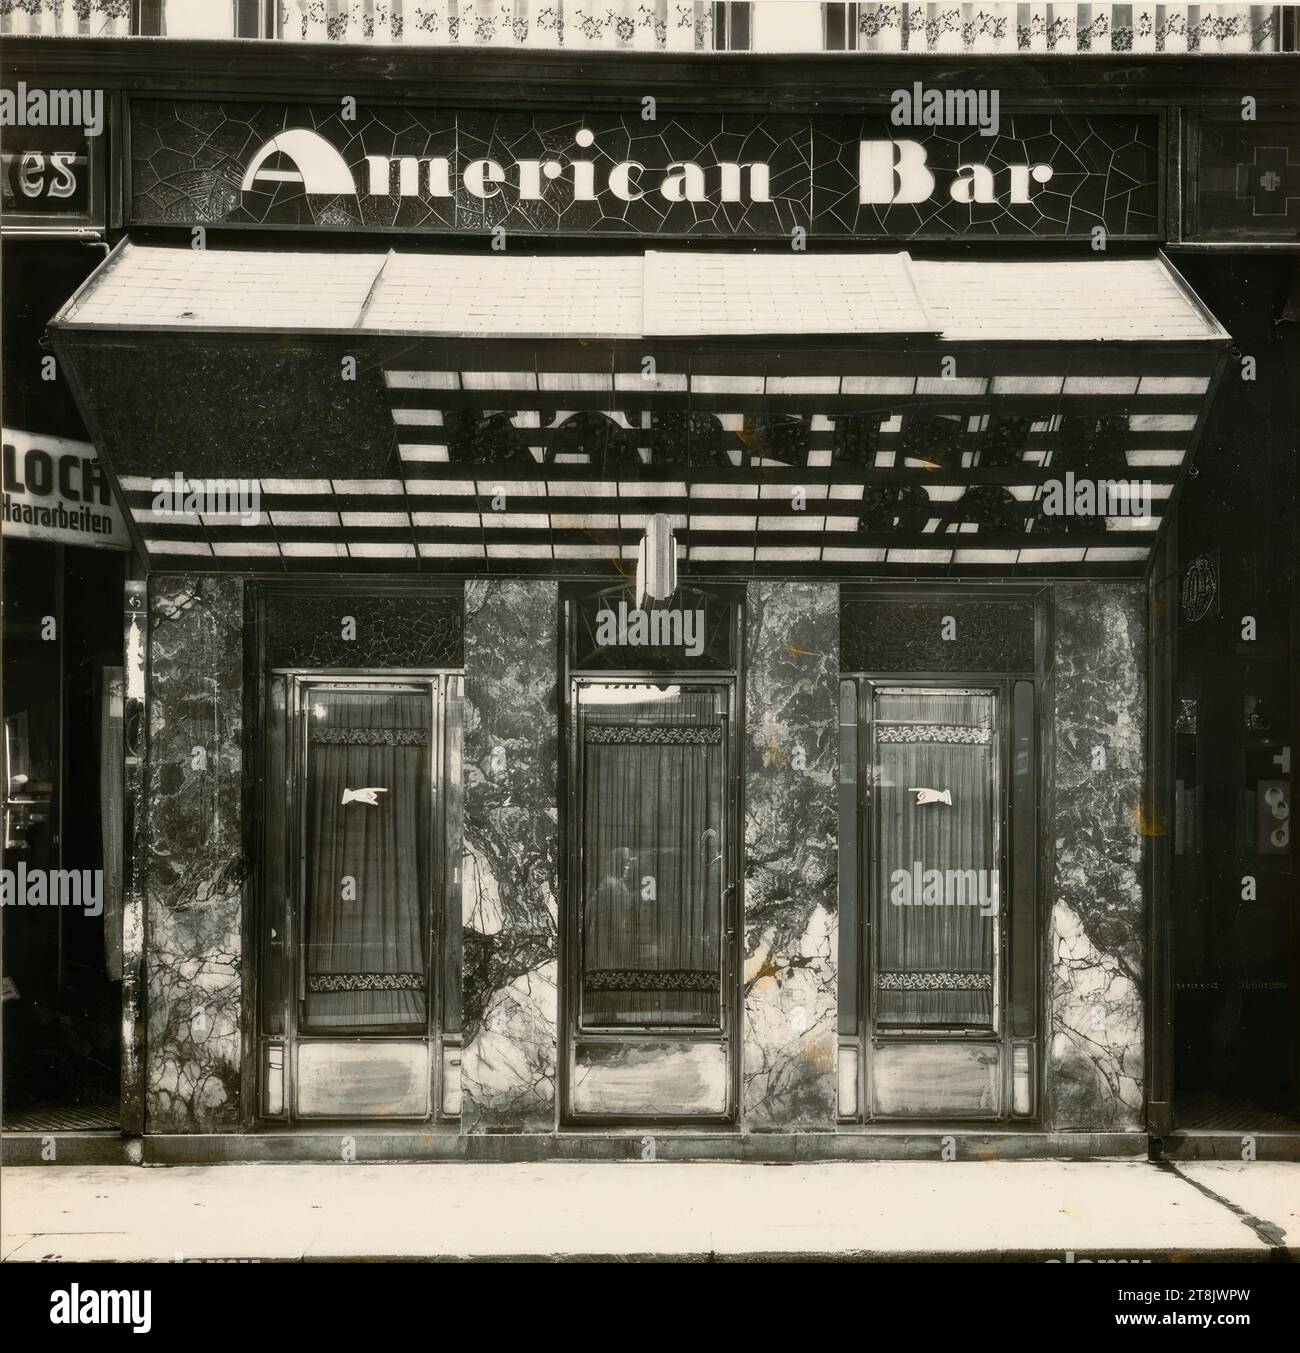 Kärntner Bar, American Bar, Vienna I., Kärntner Passage, Portal, Martin Gerlach jun., Wien 1879 - 1944 Wien, 1907, Fotografie, Gelatine Silber, Fotopapier: 14,9 x 14,4 cm, 5 7/8 x 5 11/16 Zoll, rückseitig: M.o.'A. Loos/Kärntner Bar/S 39. Abb. 19, Vintage, /, The Architect A.L., ", Bleistift, Österreich Stockfoto